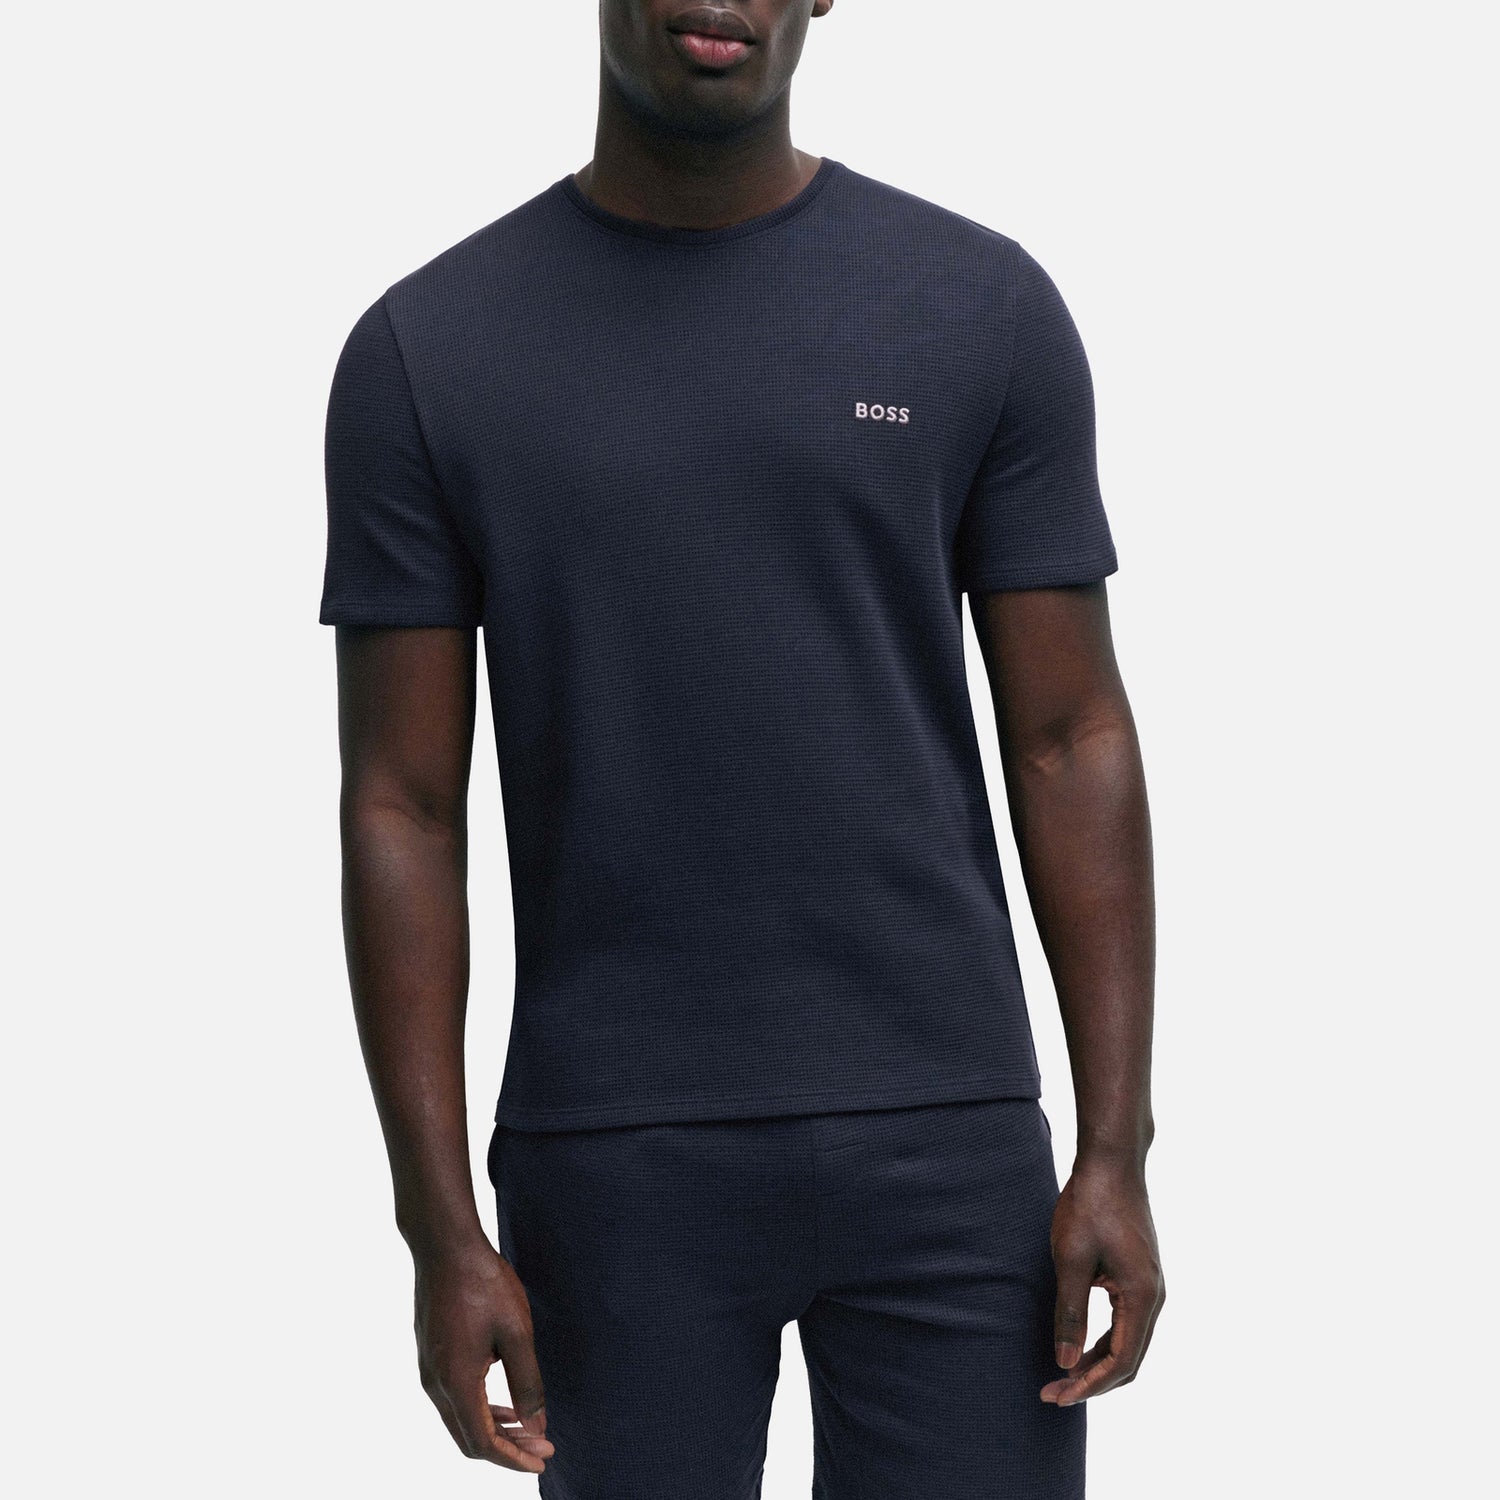 BOSS Bodywear Cotton-Blend Waffle-Jersey T-Shirt - S